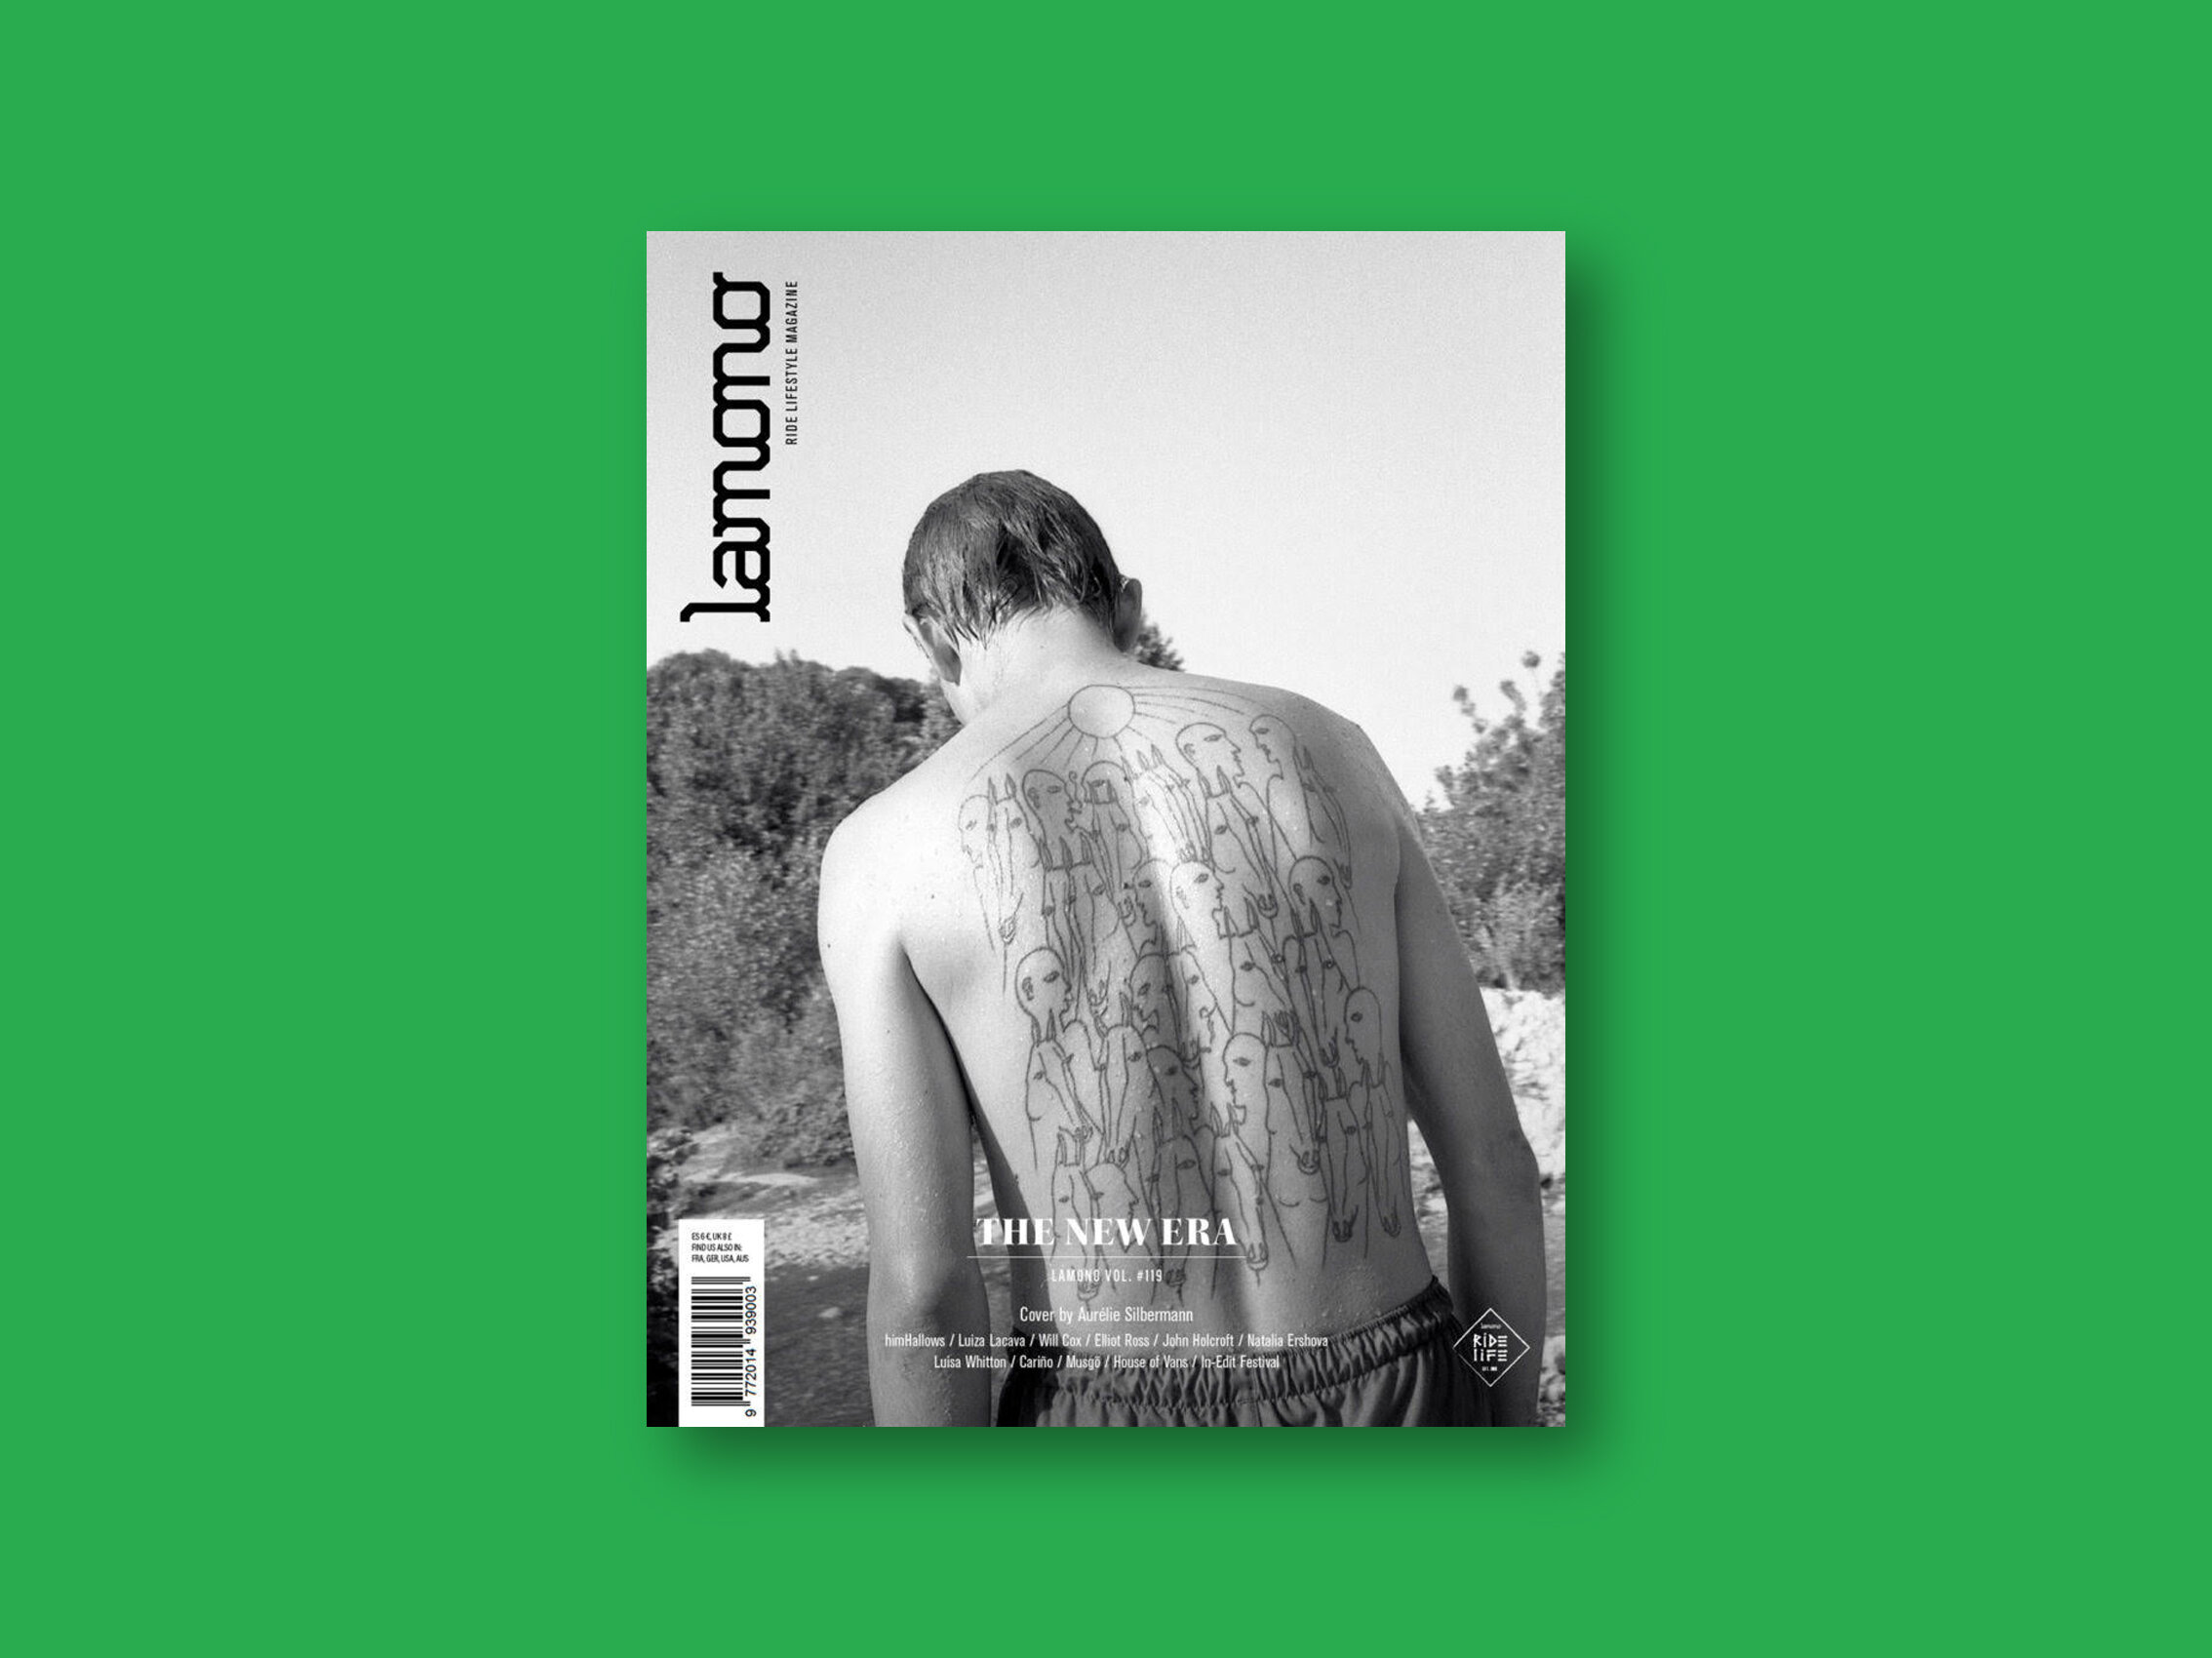   2019 Lamono Magazine  (ESP)  Issue 119, ‘The New Era’ 